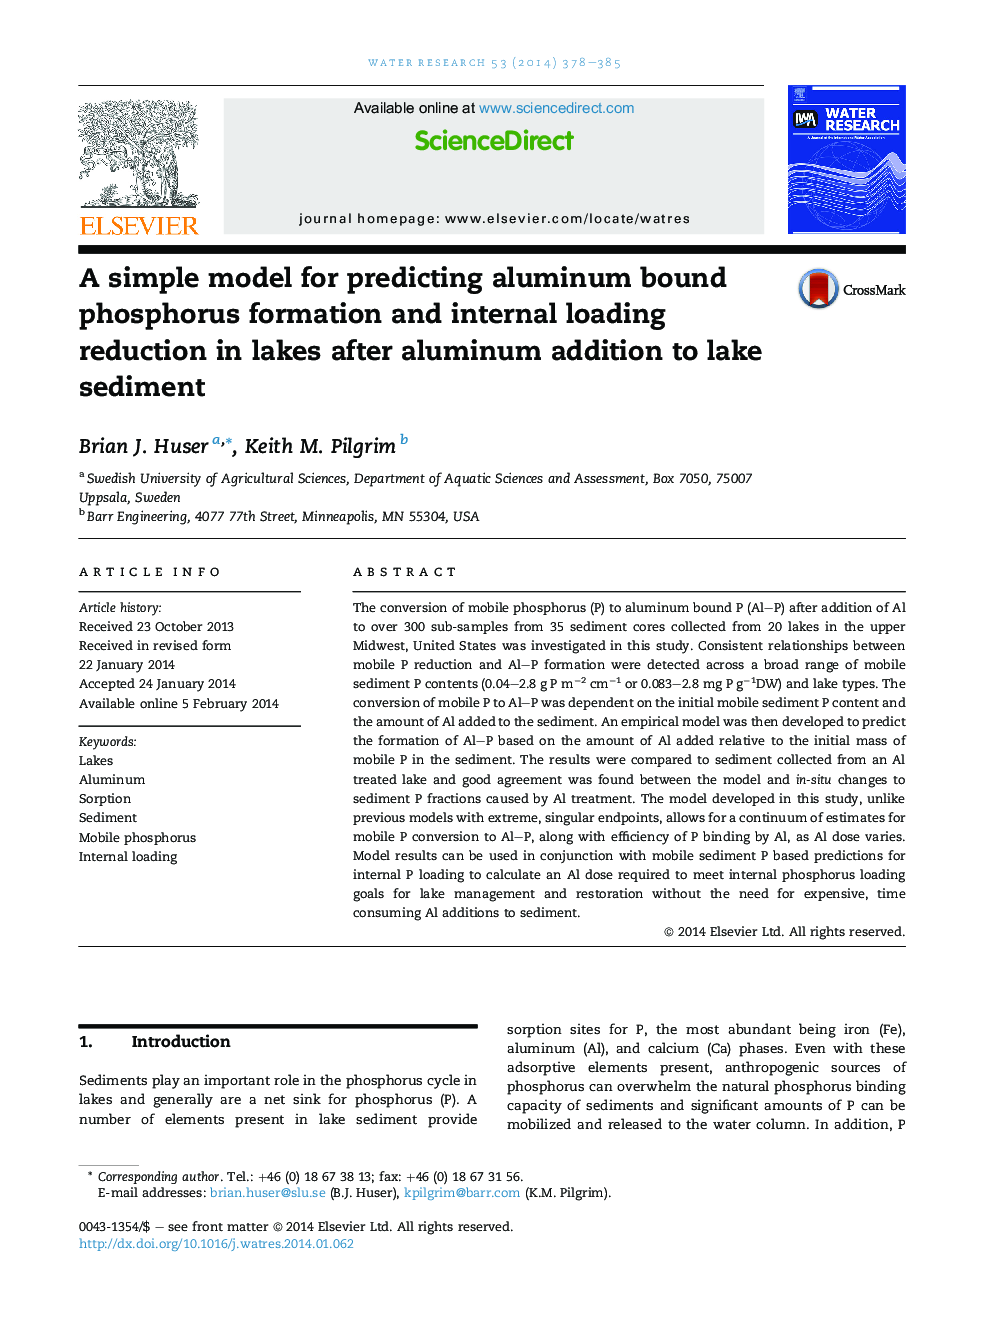 یک مدل ساده برای پیش بینی تشکیل فسفر محدود شده آلومینیوم و کاهش بار داخلی در دریاچه ها پس از افزودن آلومینیوم به رسوبات دریاچه 